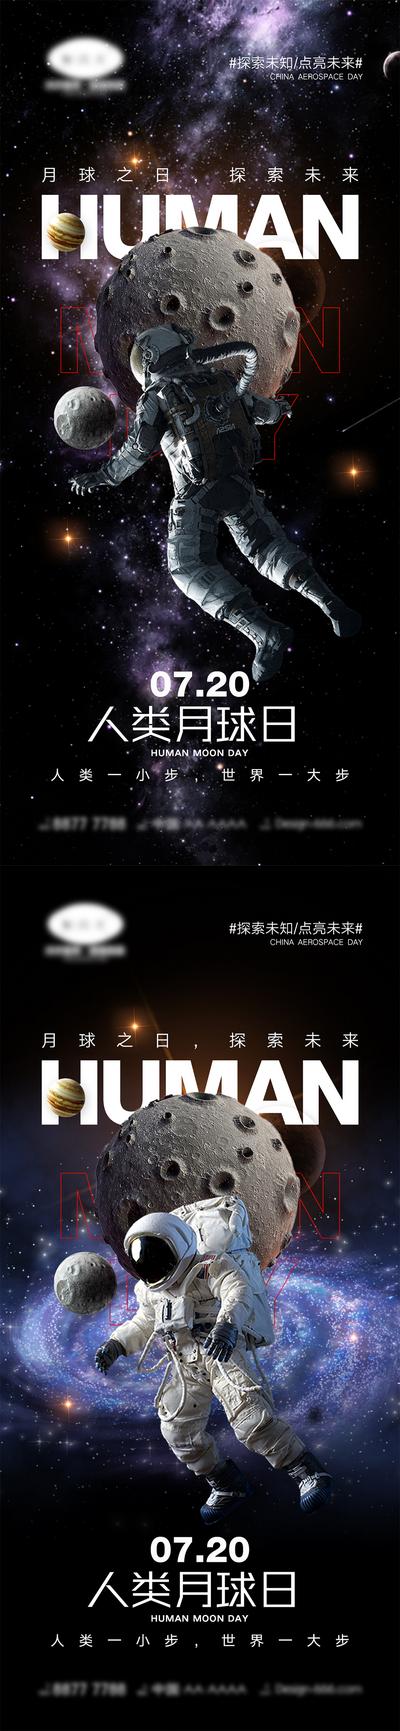 南门网 海报 公立节日 中国航天日 世界航天日 火箭 宇航员 宇宙 地球 太空 4.24 7.20 人类月球日 月球 探索